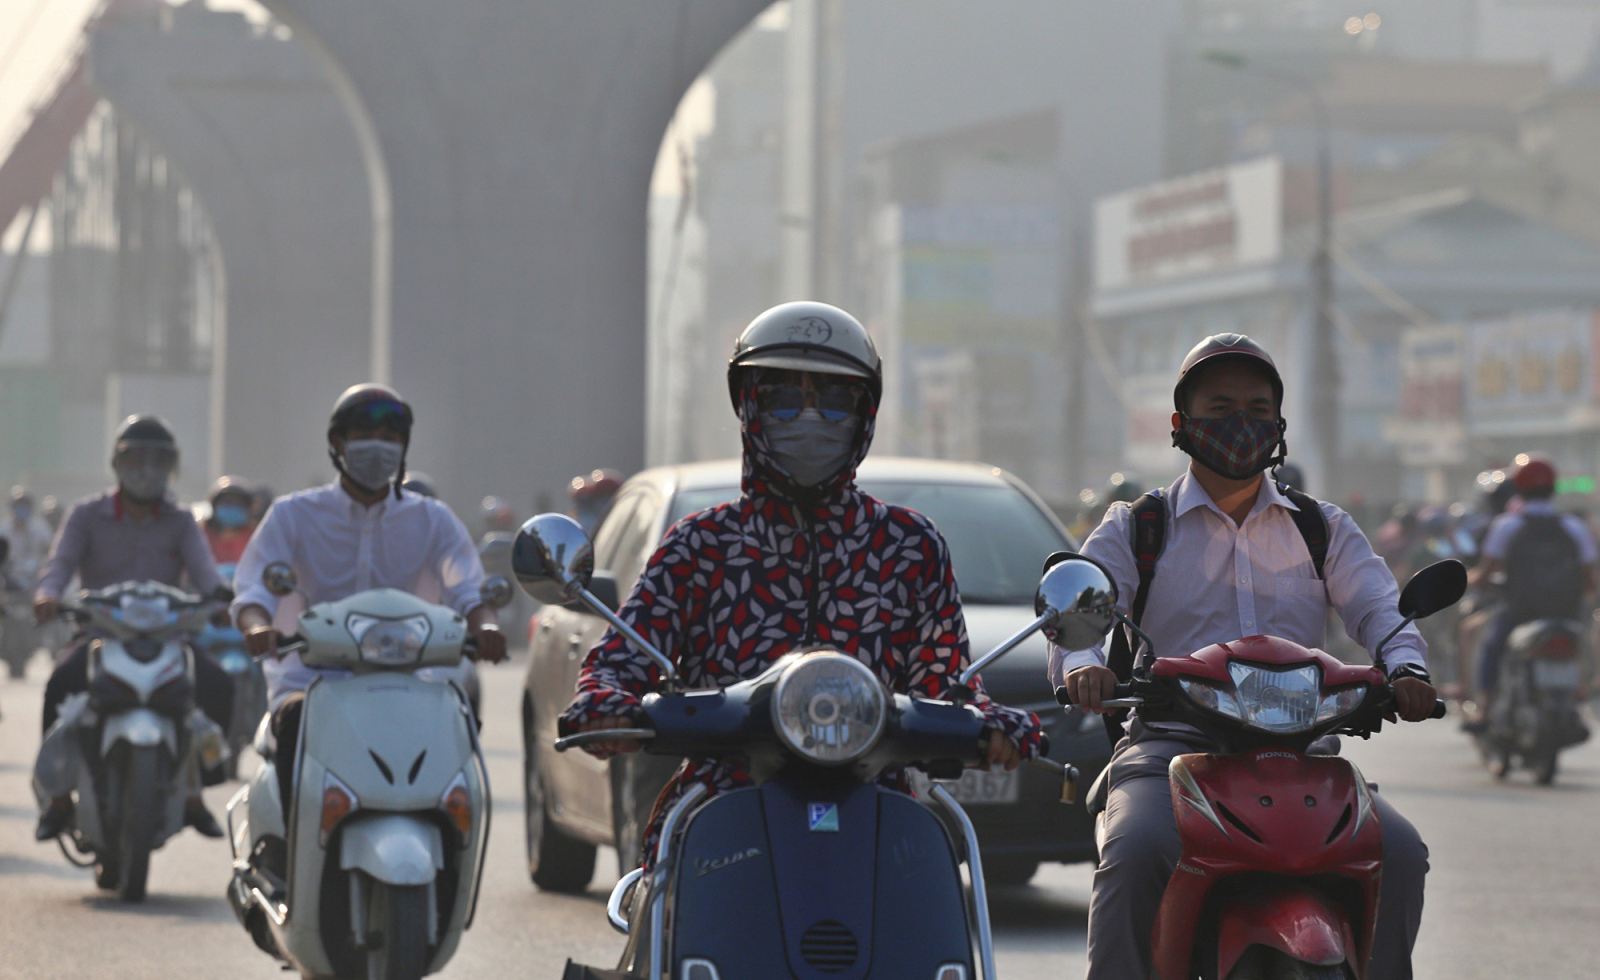 Ô nhiễm không khí ở Hà Nội: Dân lo, giới chức nói vẫn ổn